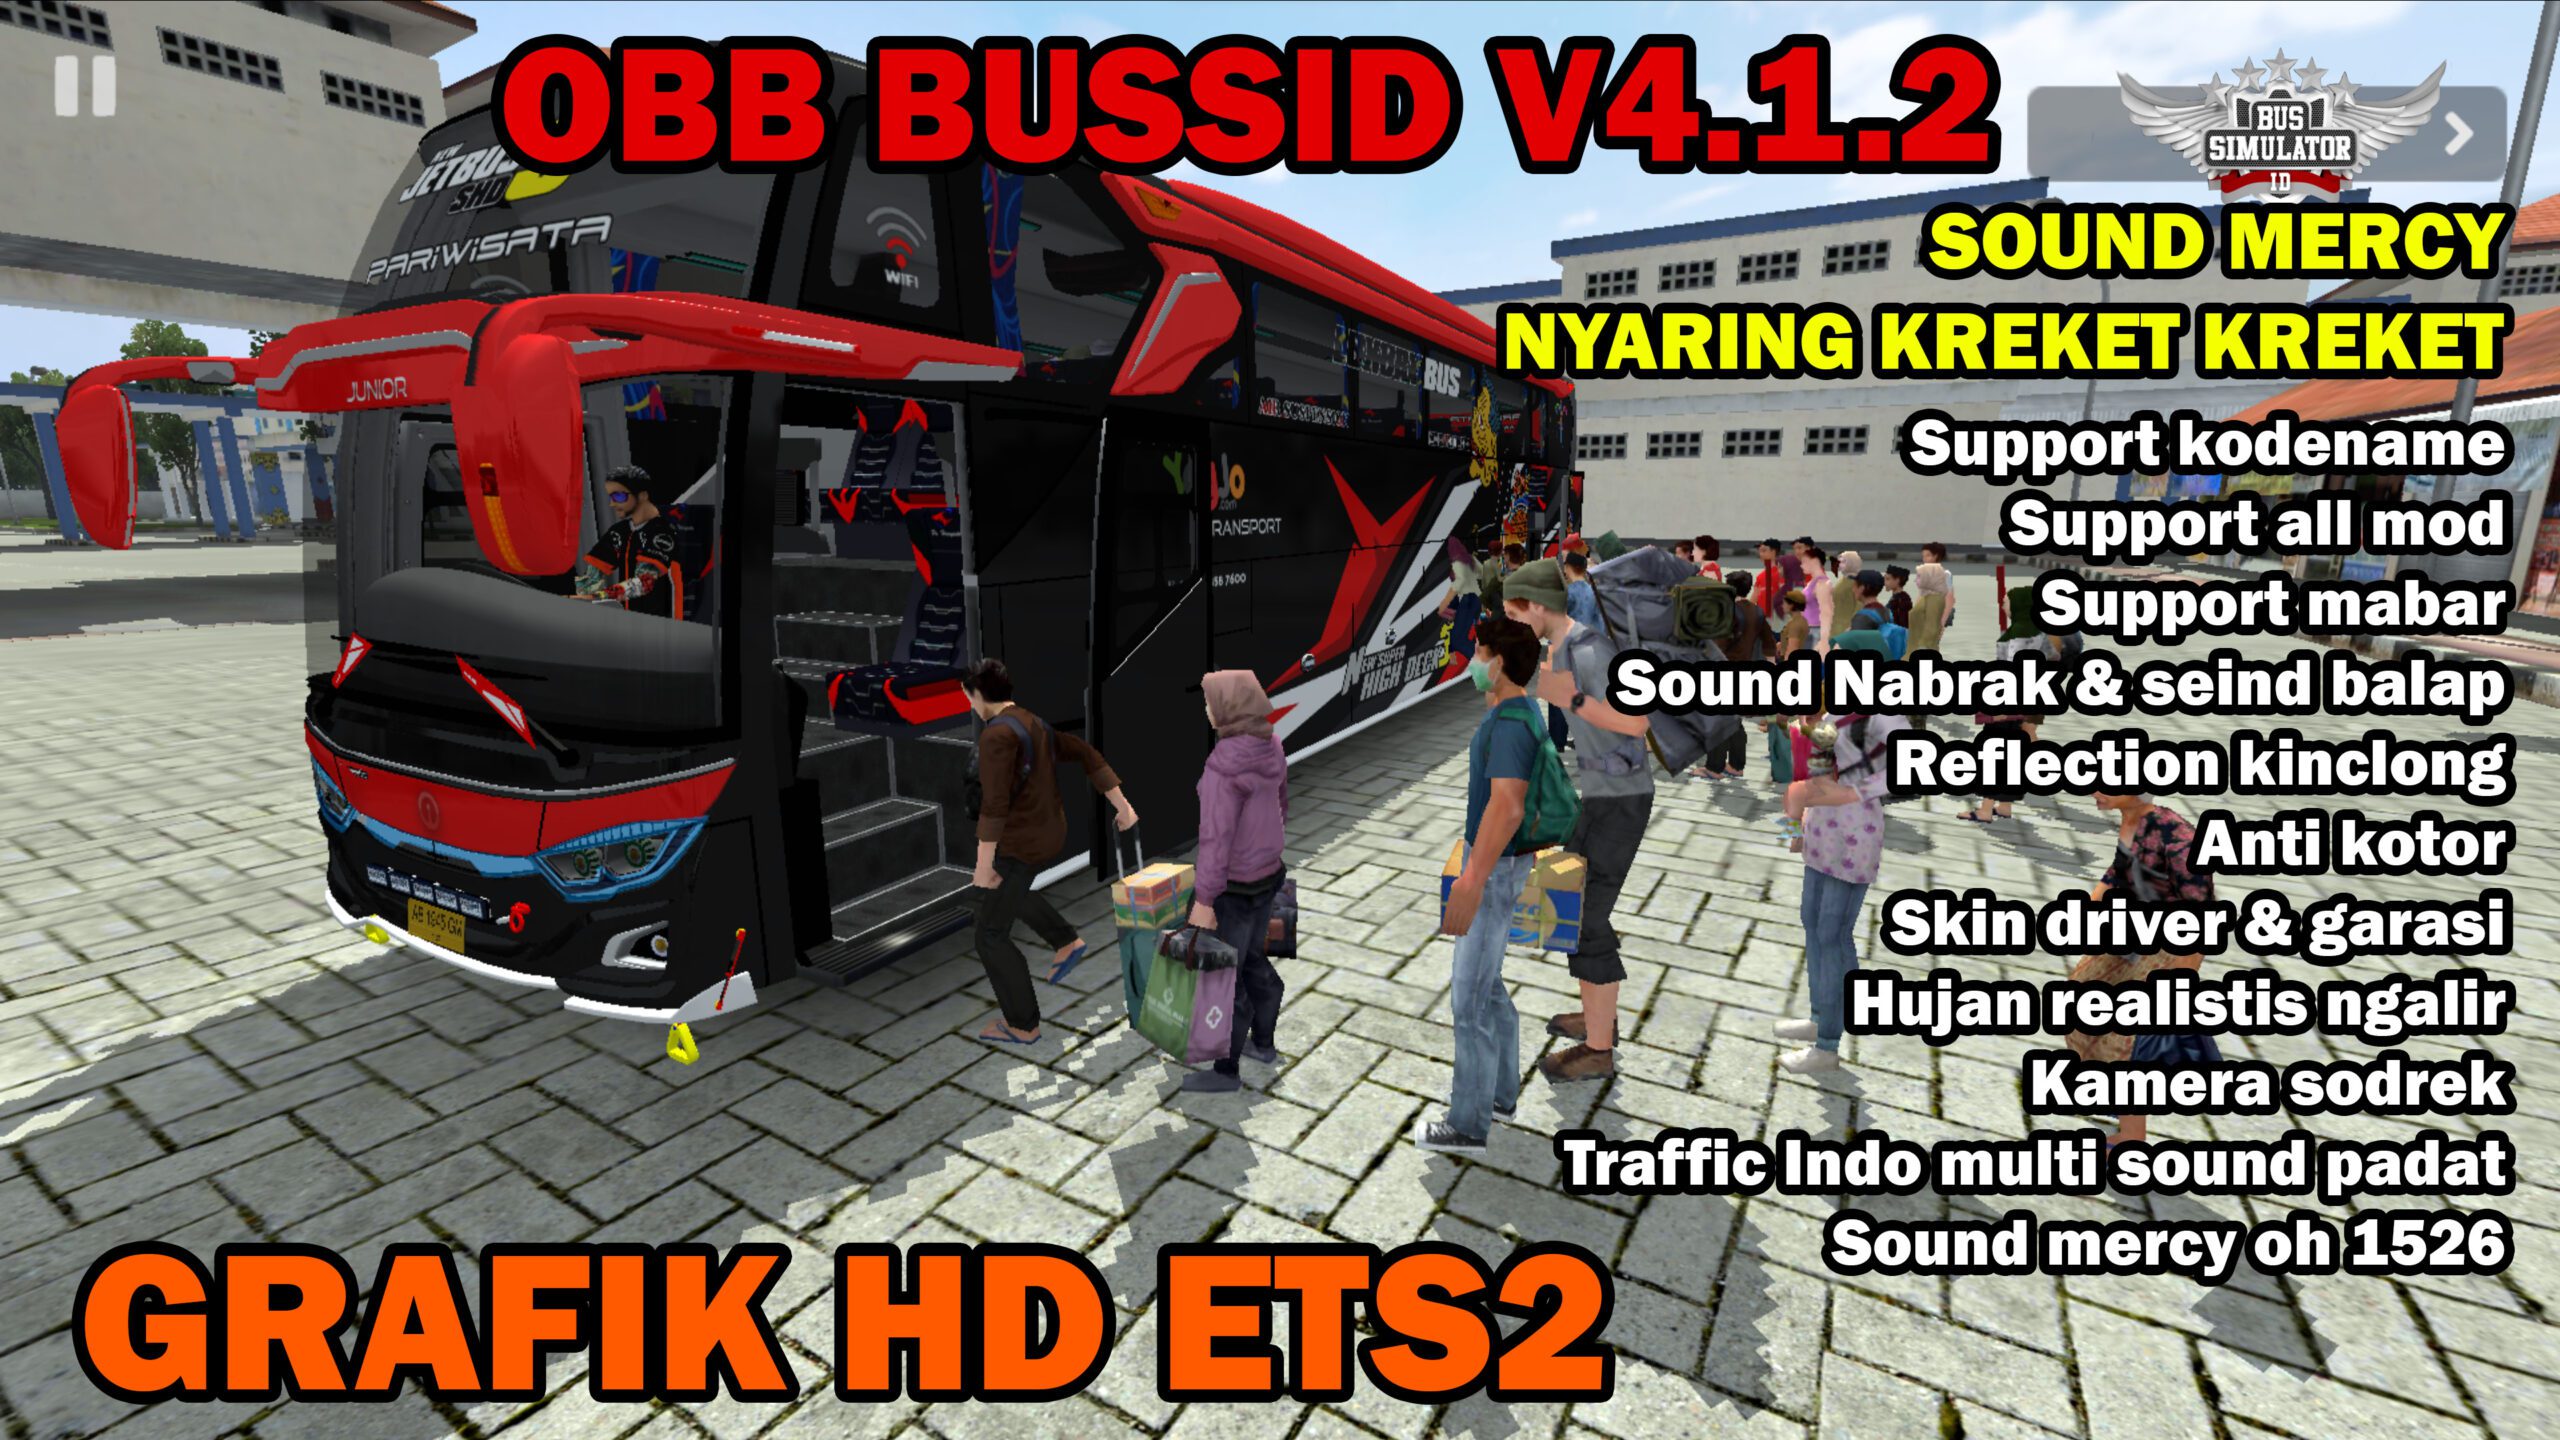 Obb Bussid V412 JB3 Sound Mercy Kreket Kreket